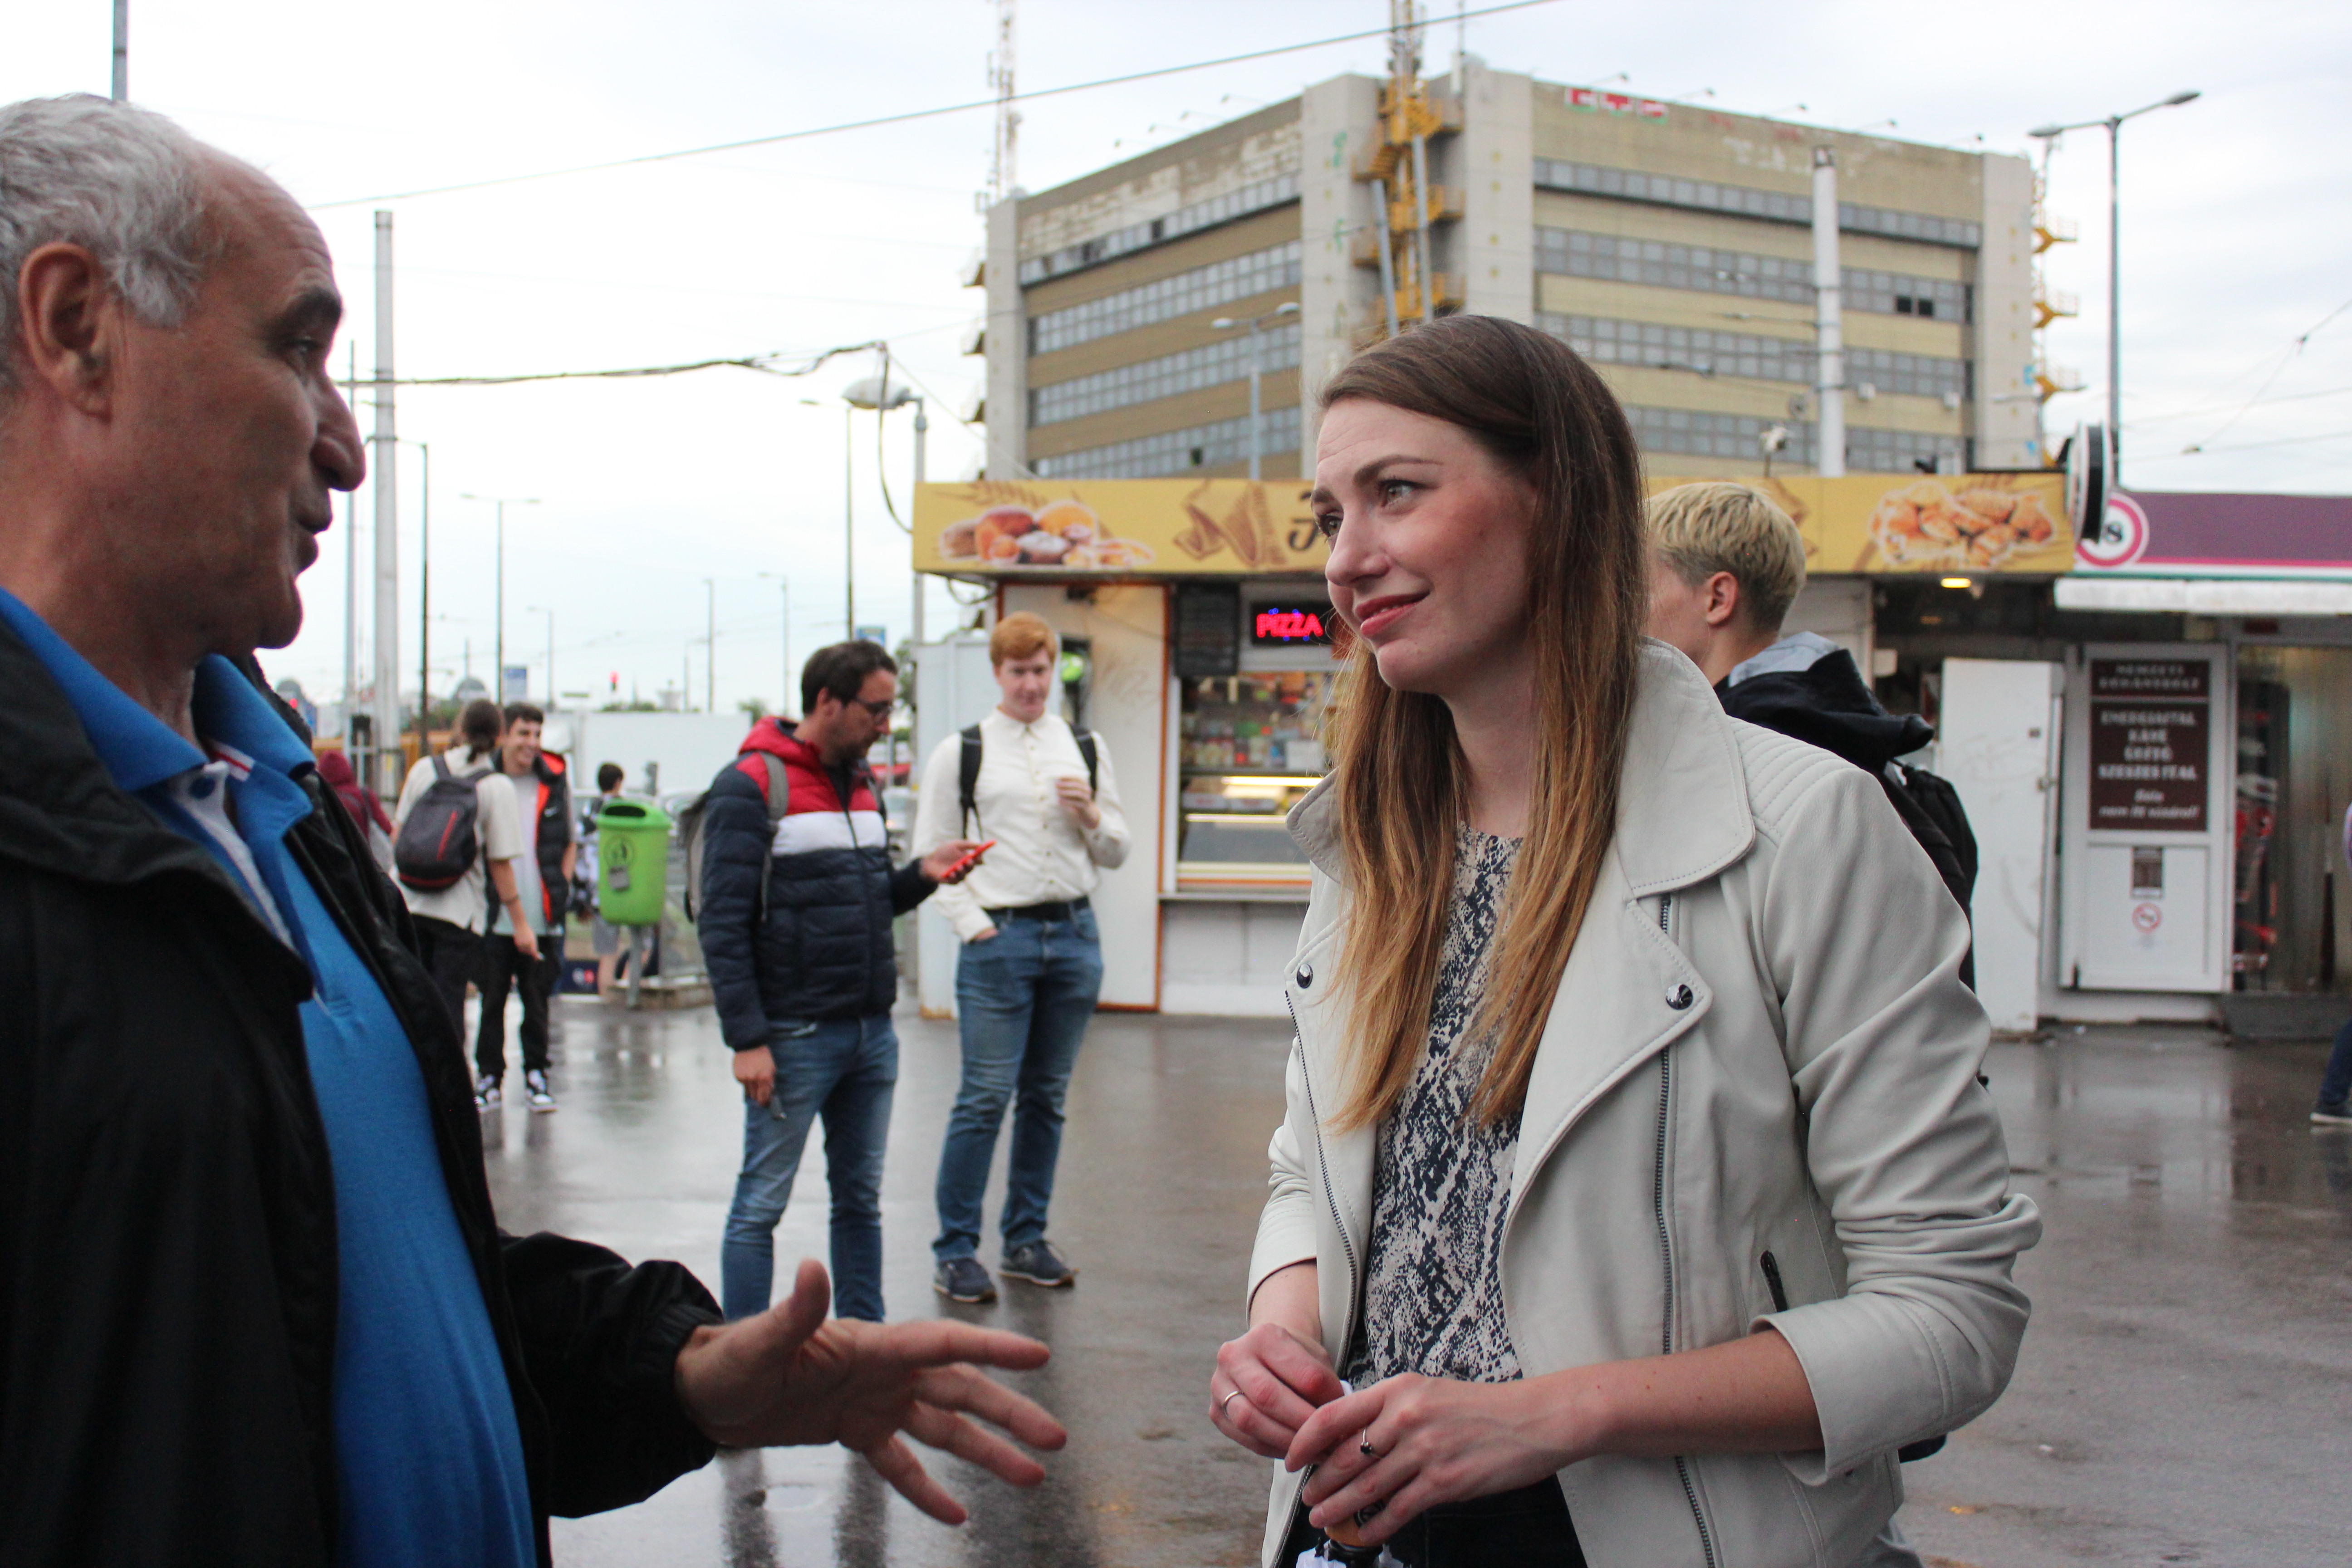 Donáth Anna, a Momentum EP-képviselője is Hadházy Ákosnak kampányolt.